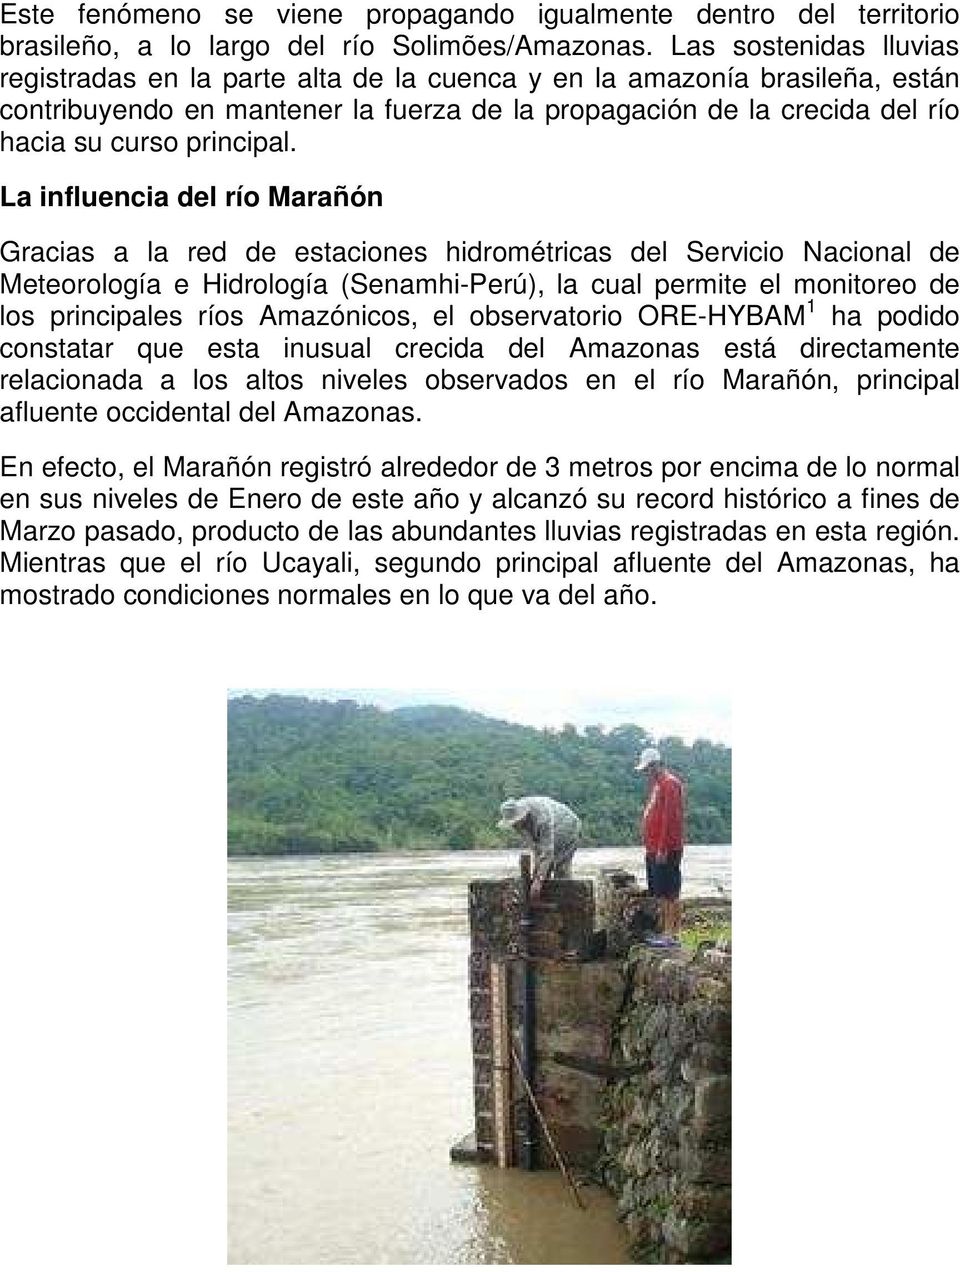 La influencia del río Marañón Gracias a la red de estaciones hidrométricas del Servicio Nacional de Meteorología e Hidrología (Senamhi-Perú), la cual permite el monitoreo de los principales ríos